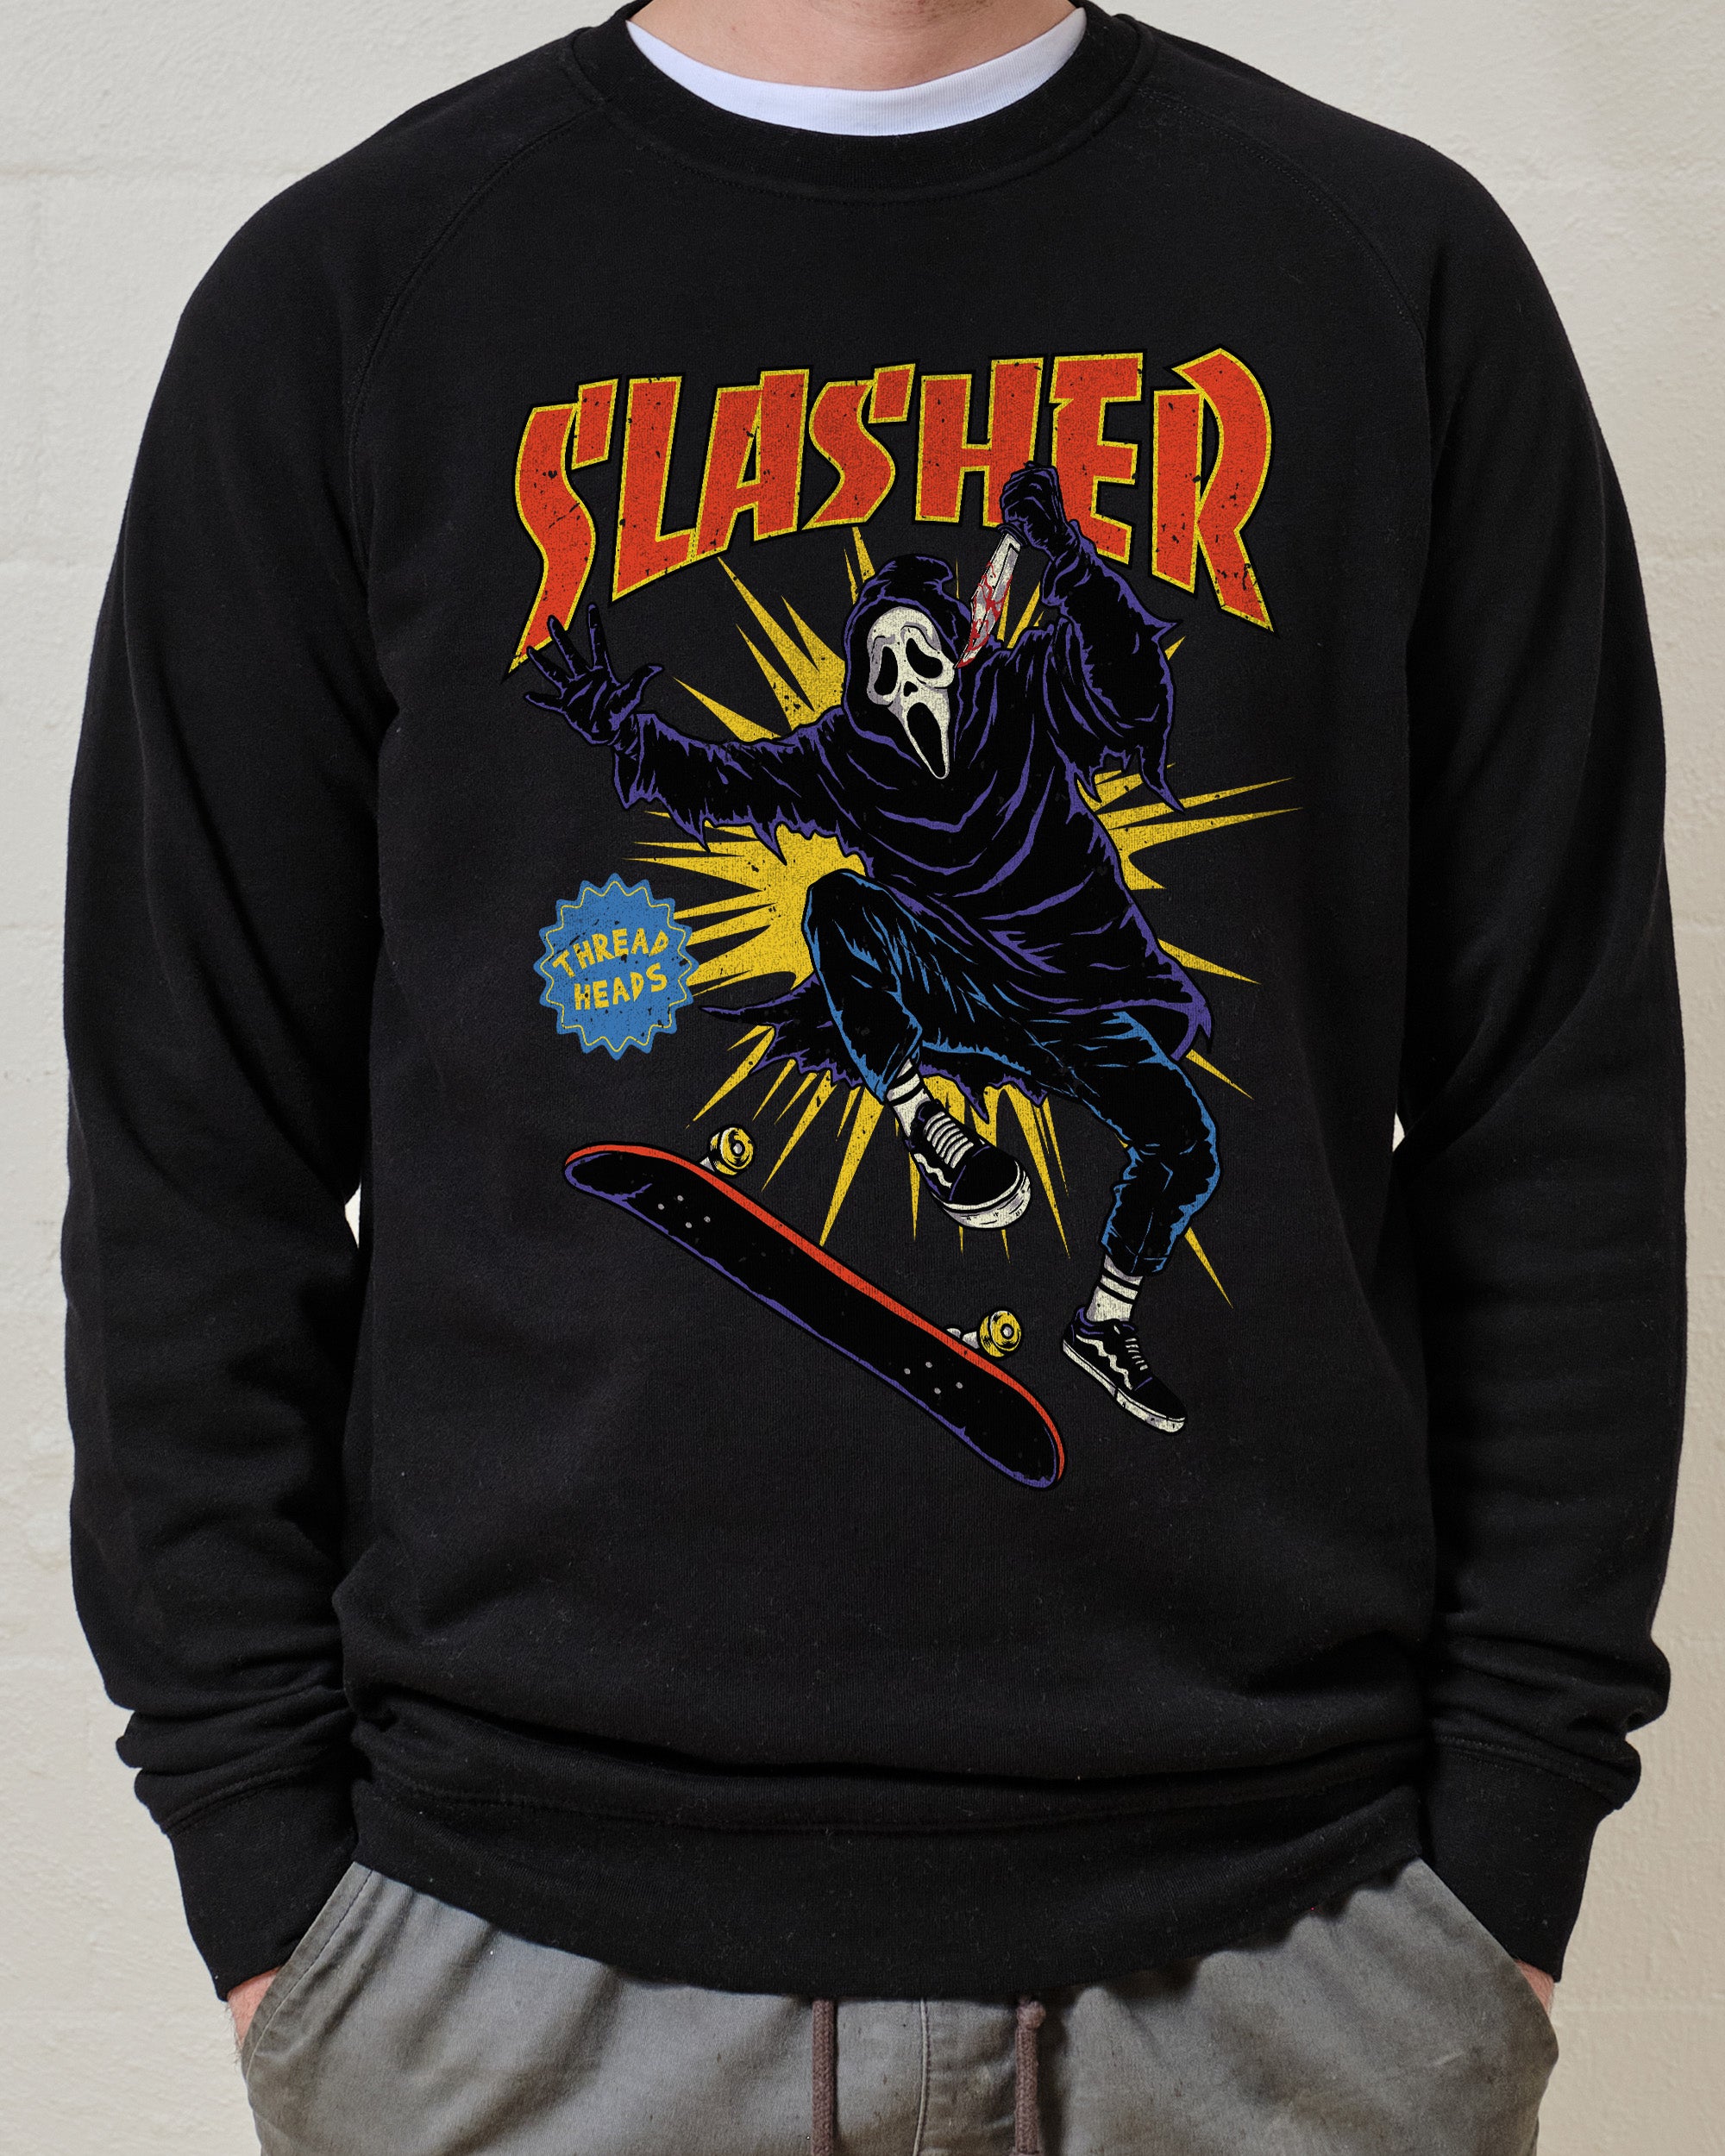 Slasher Sweater Australia Online